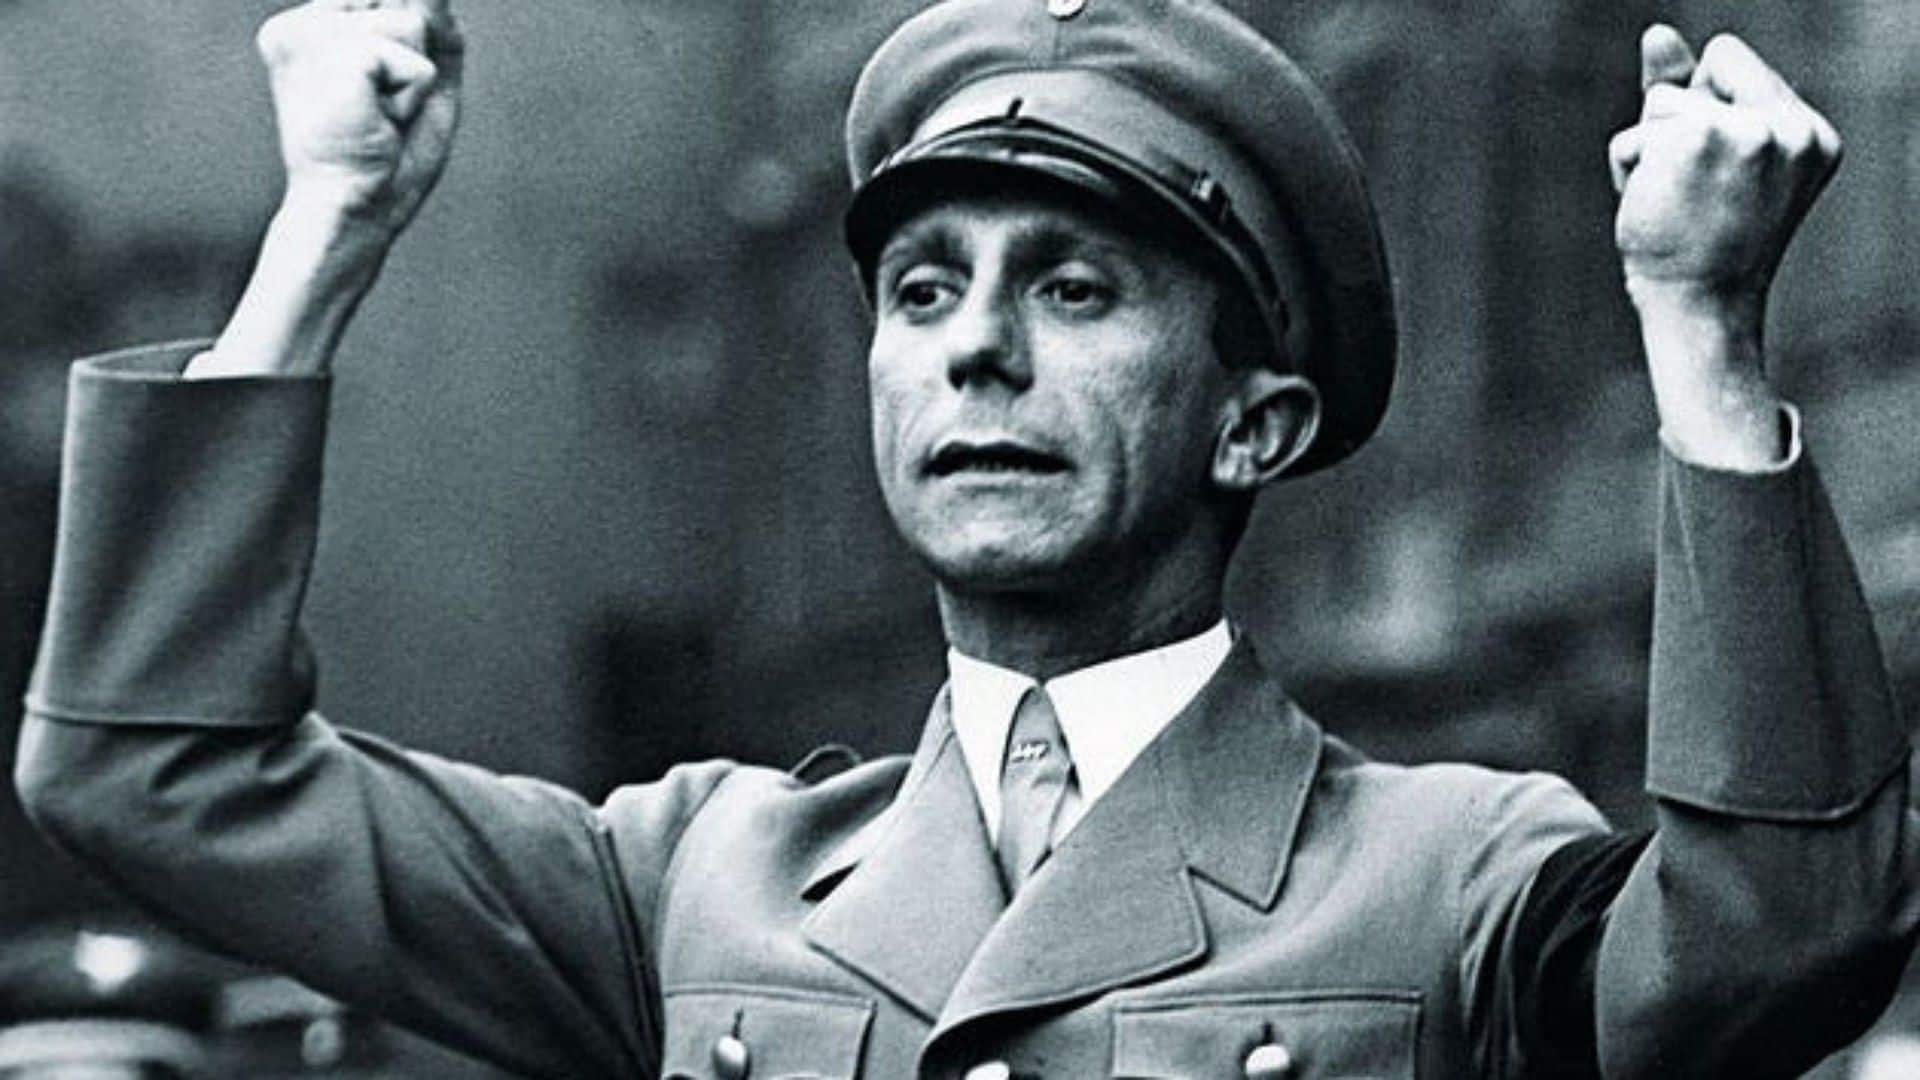 Joseph Goebbels, quem foi? pensamentos e ideologias do ministro nazista